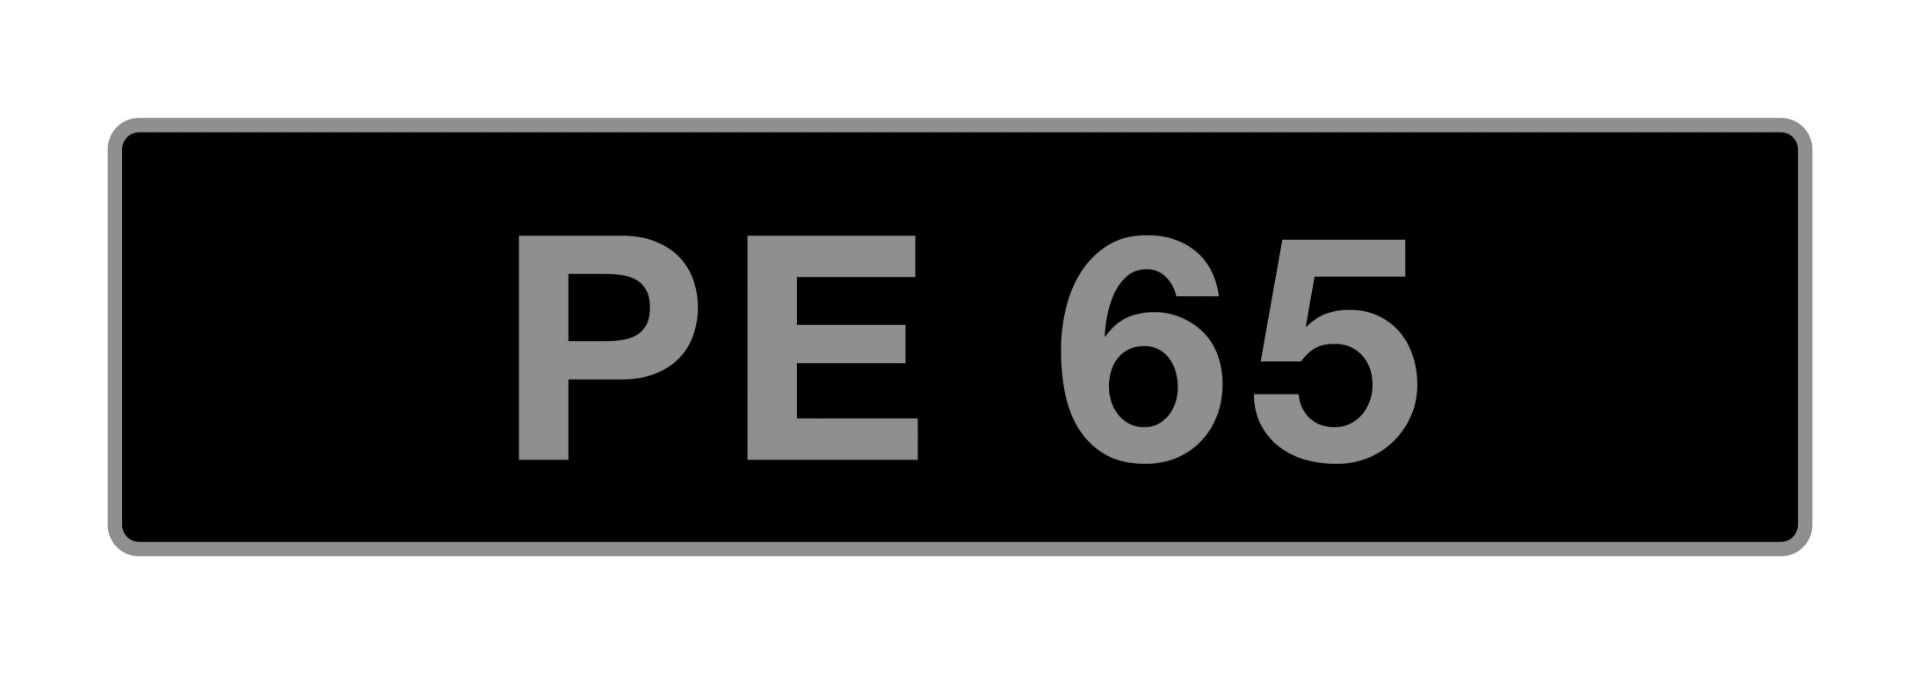 UK Vehicle Registration Number 'PE 65',